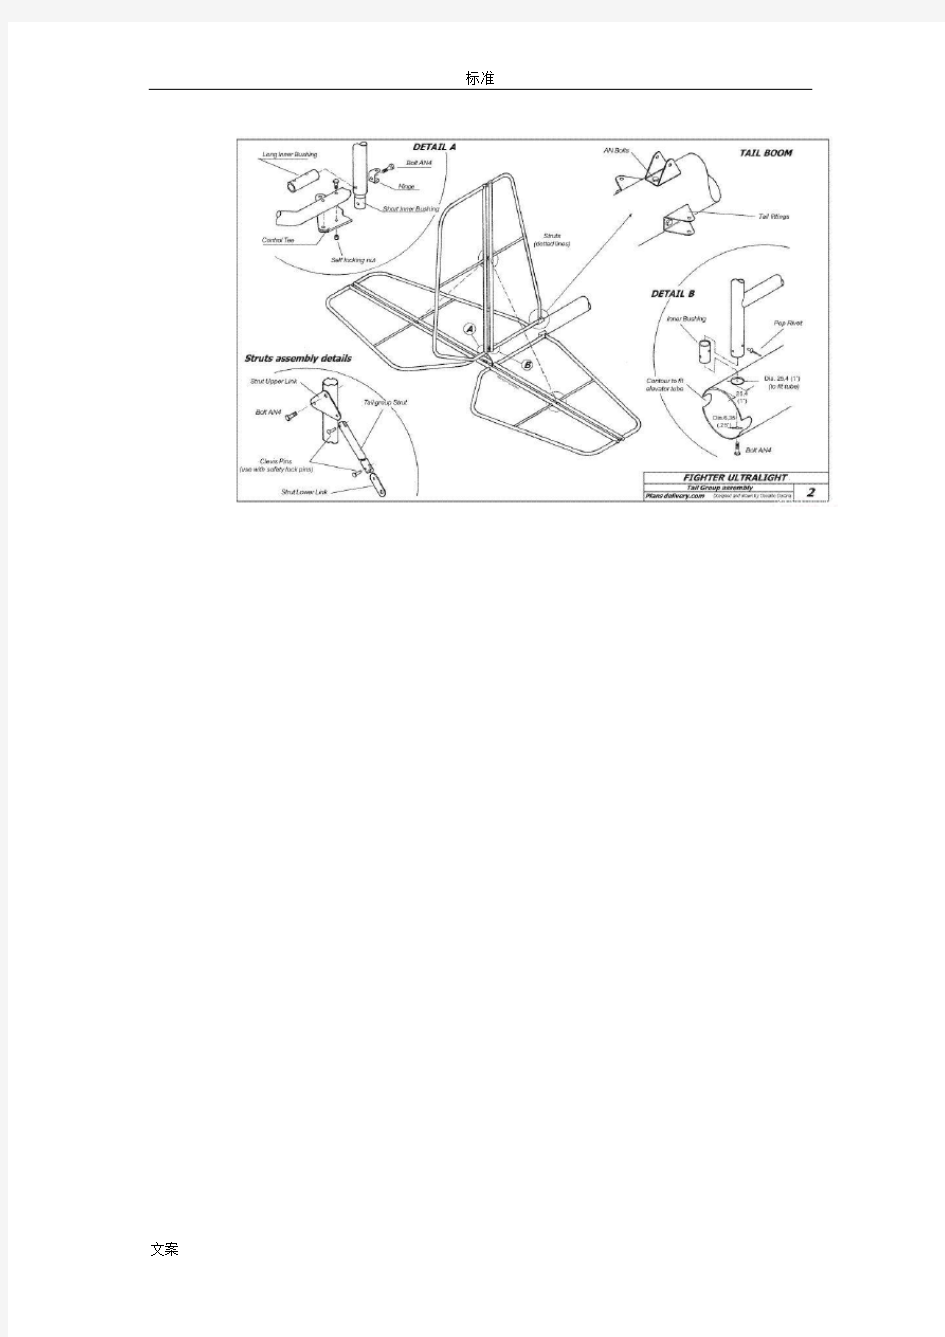 固定翼单座轻型飞机图纸